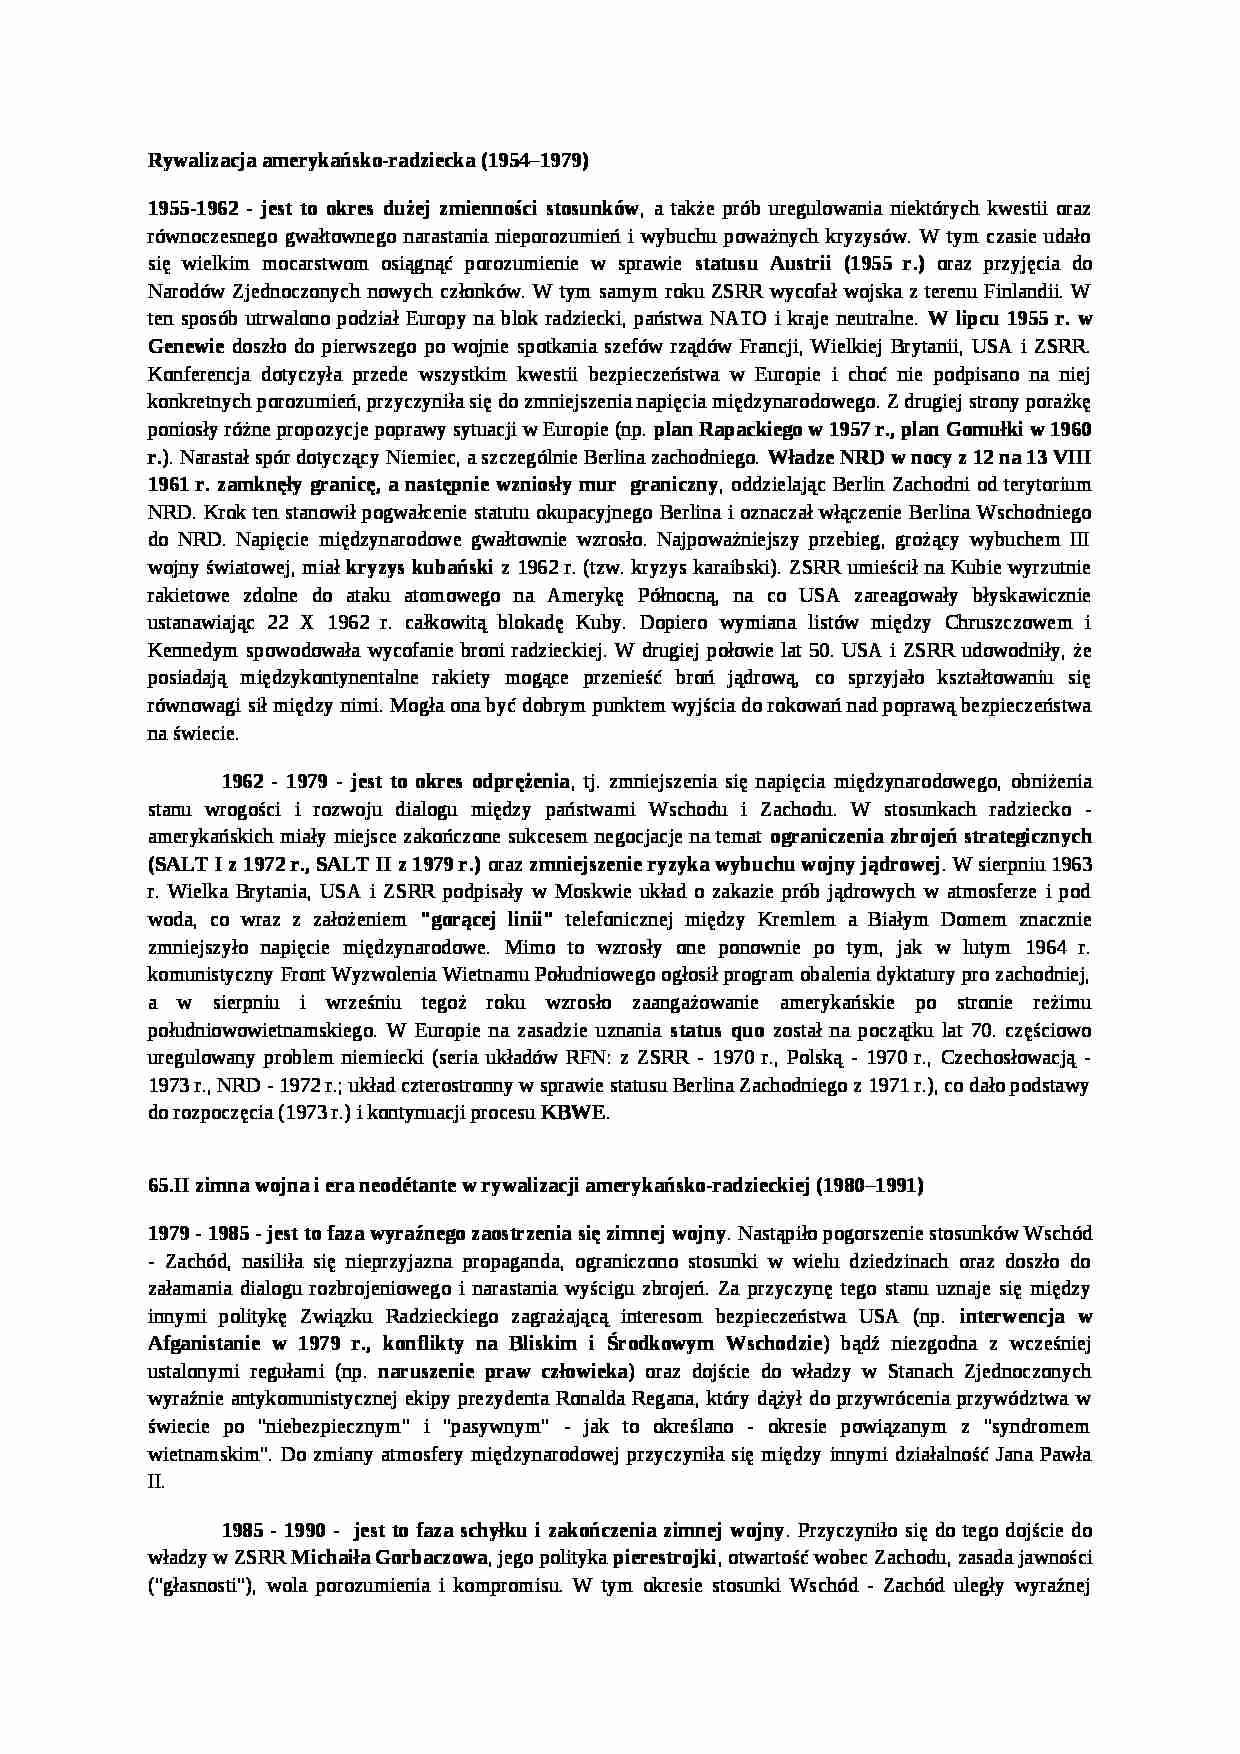 Rywalizacja amerykańsko-radziecka 1954-1979- opracowanie - strona 1